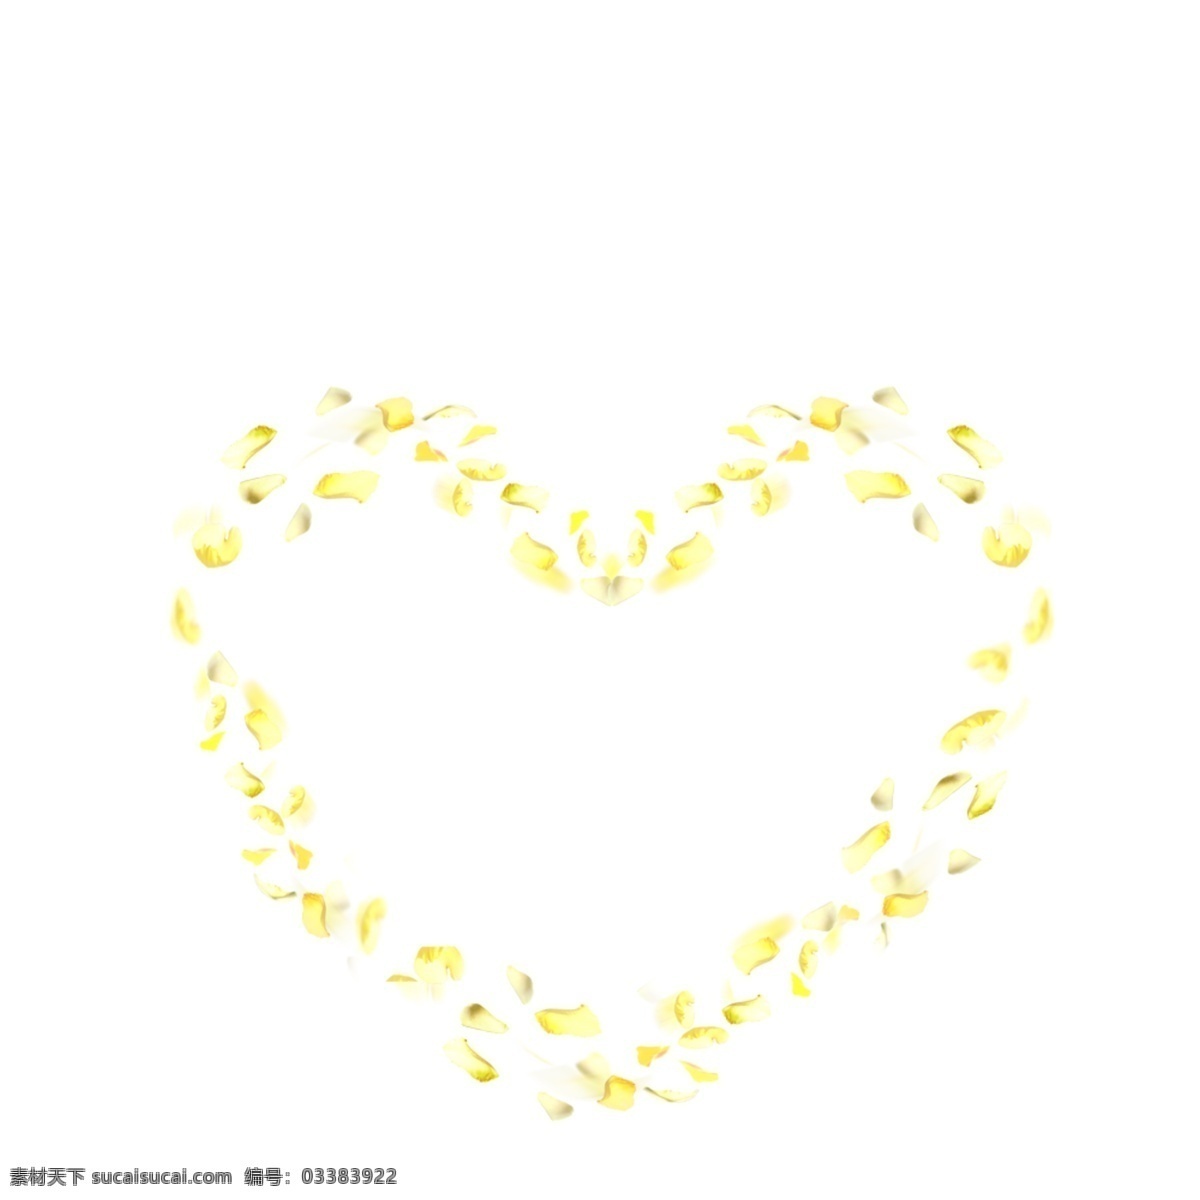 黄色花瓣心形 黄色 花瓣 心形